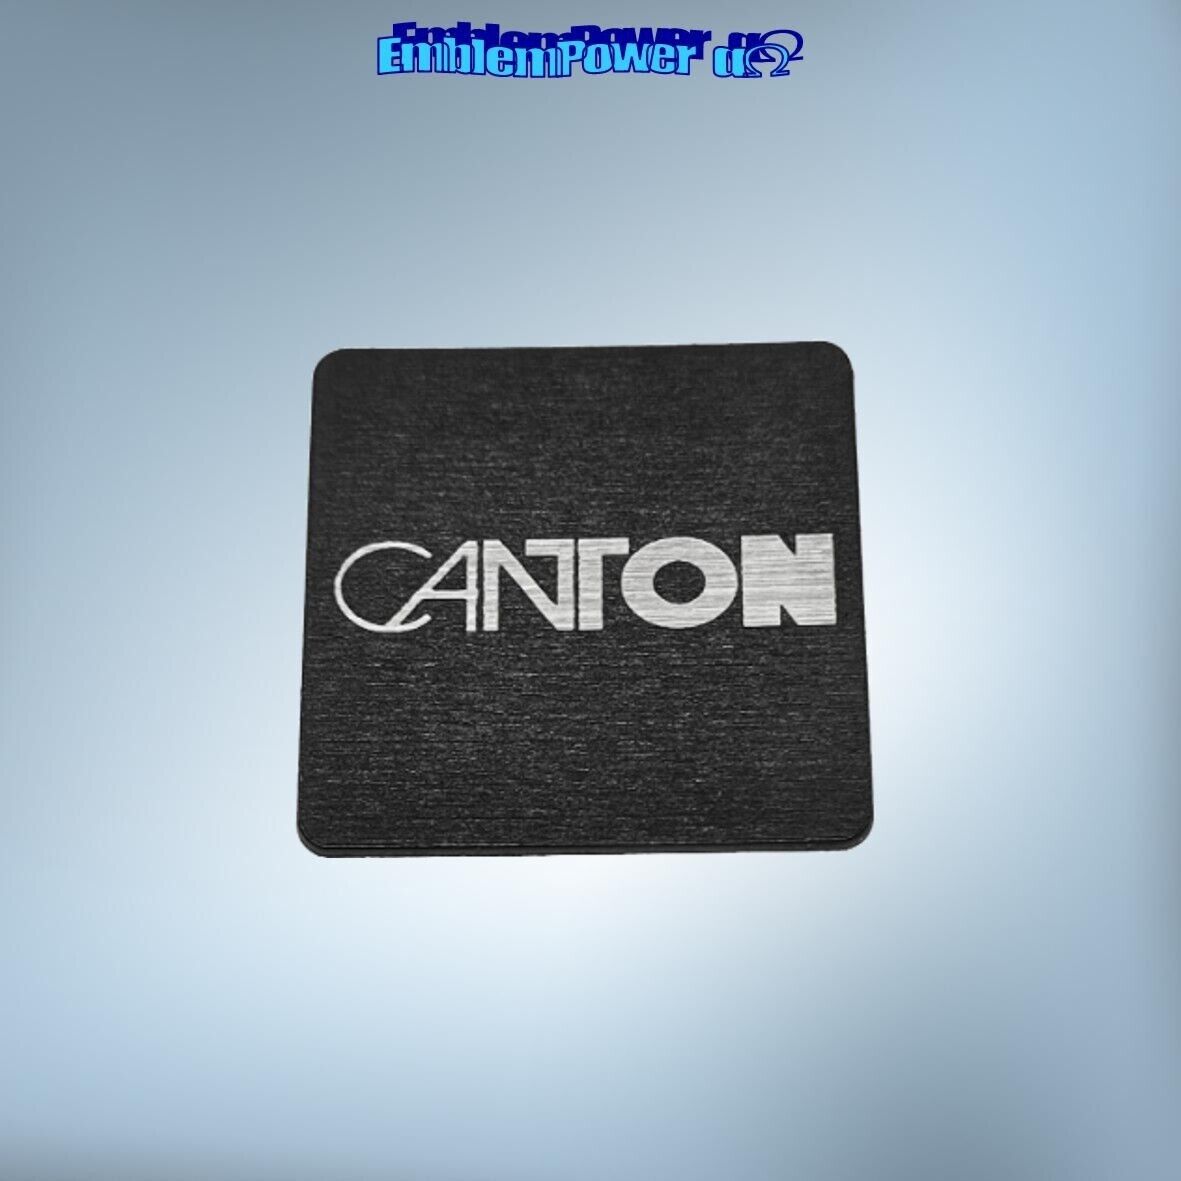 Canton 20x20mm Emblem brushed Sticker Badge Decal Speaker Aufkleber Logo speaker